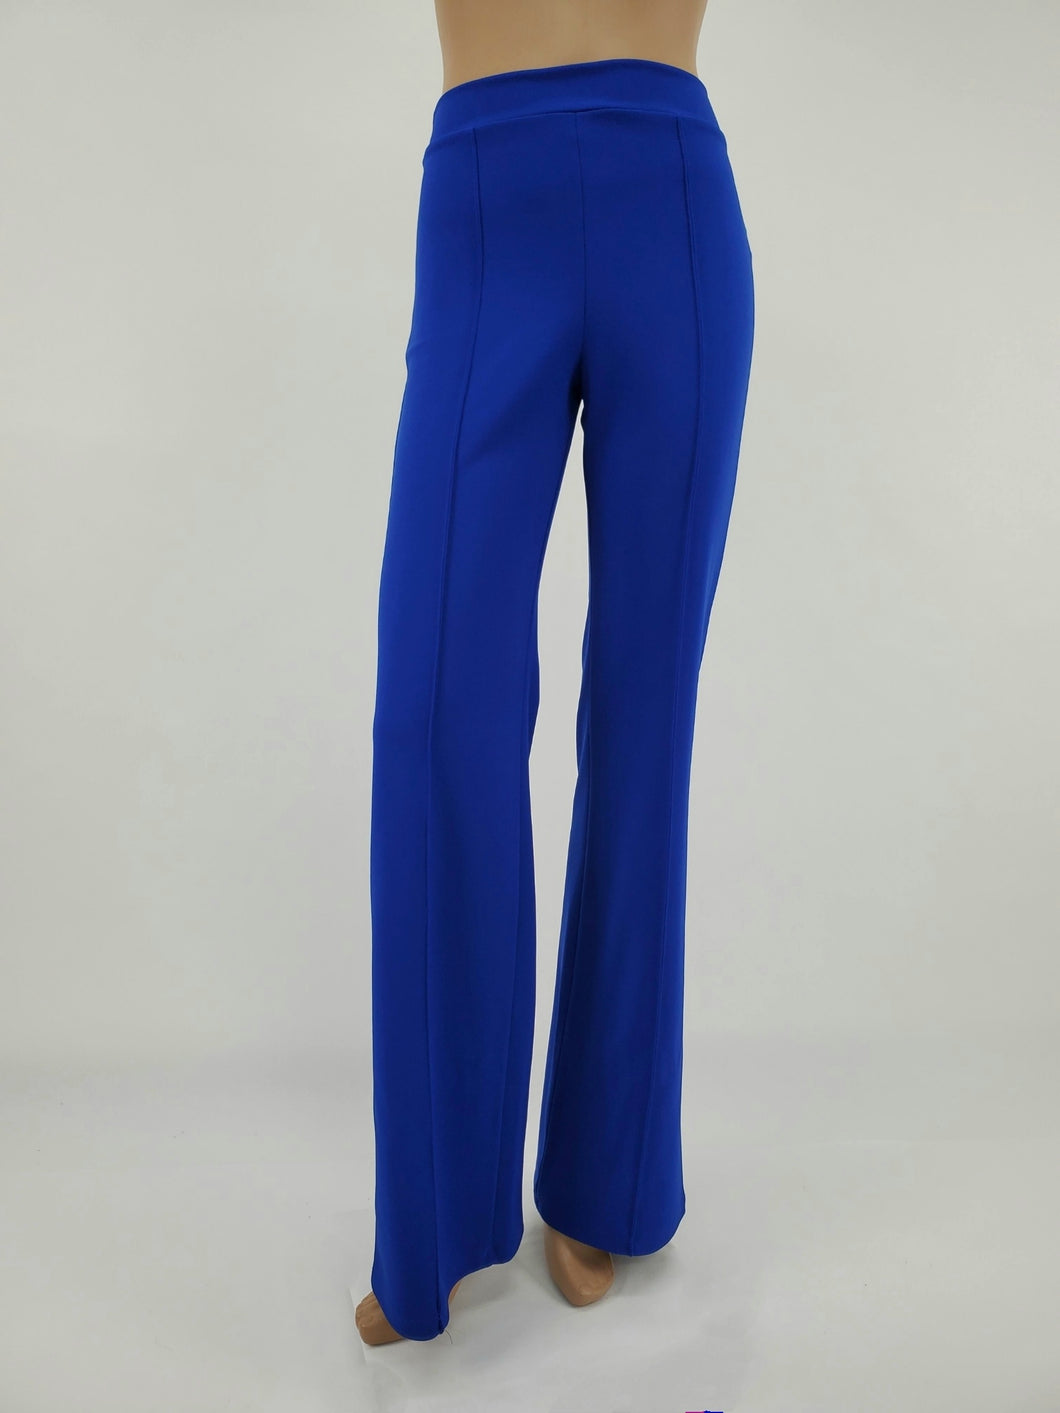 High Waist Front Pintuck Pants with Zipper (Royal Blue)